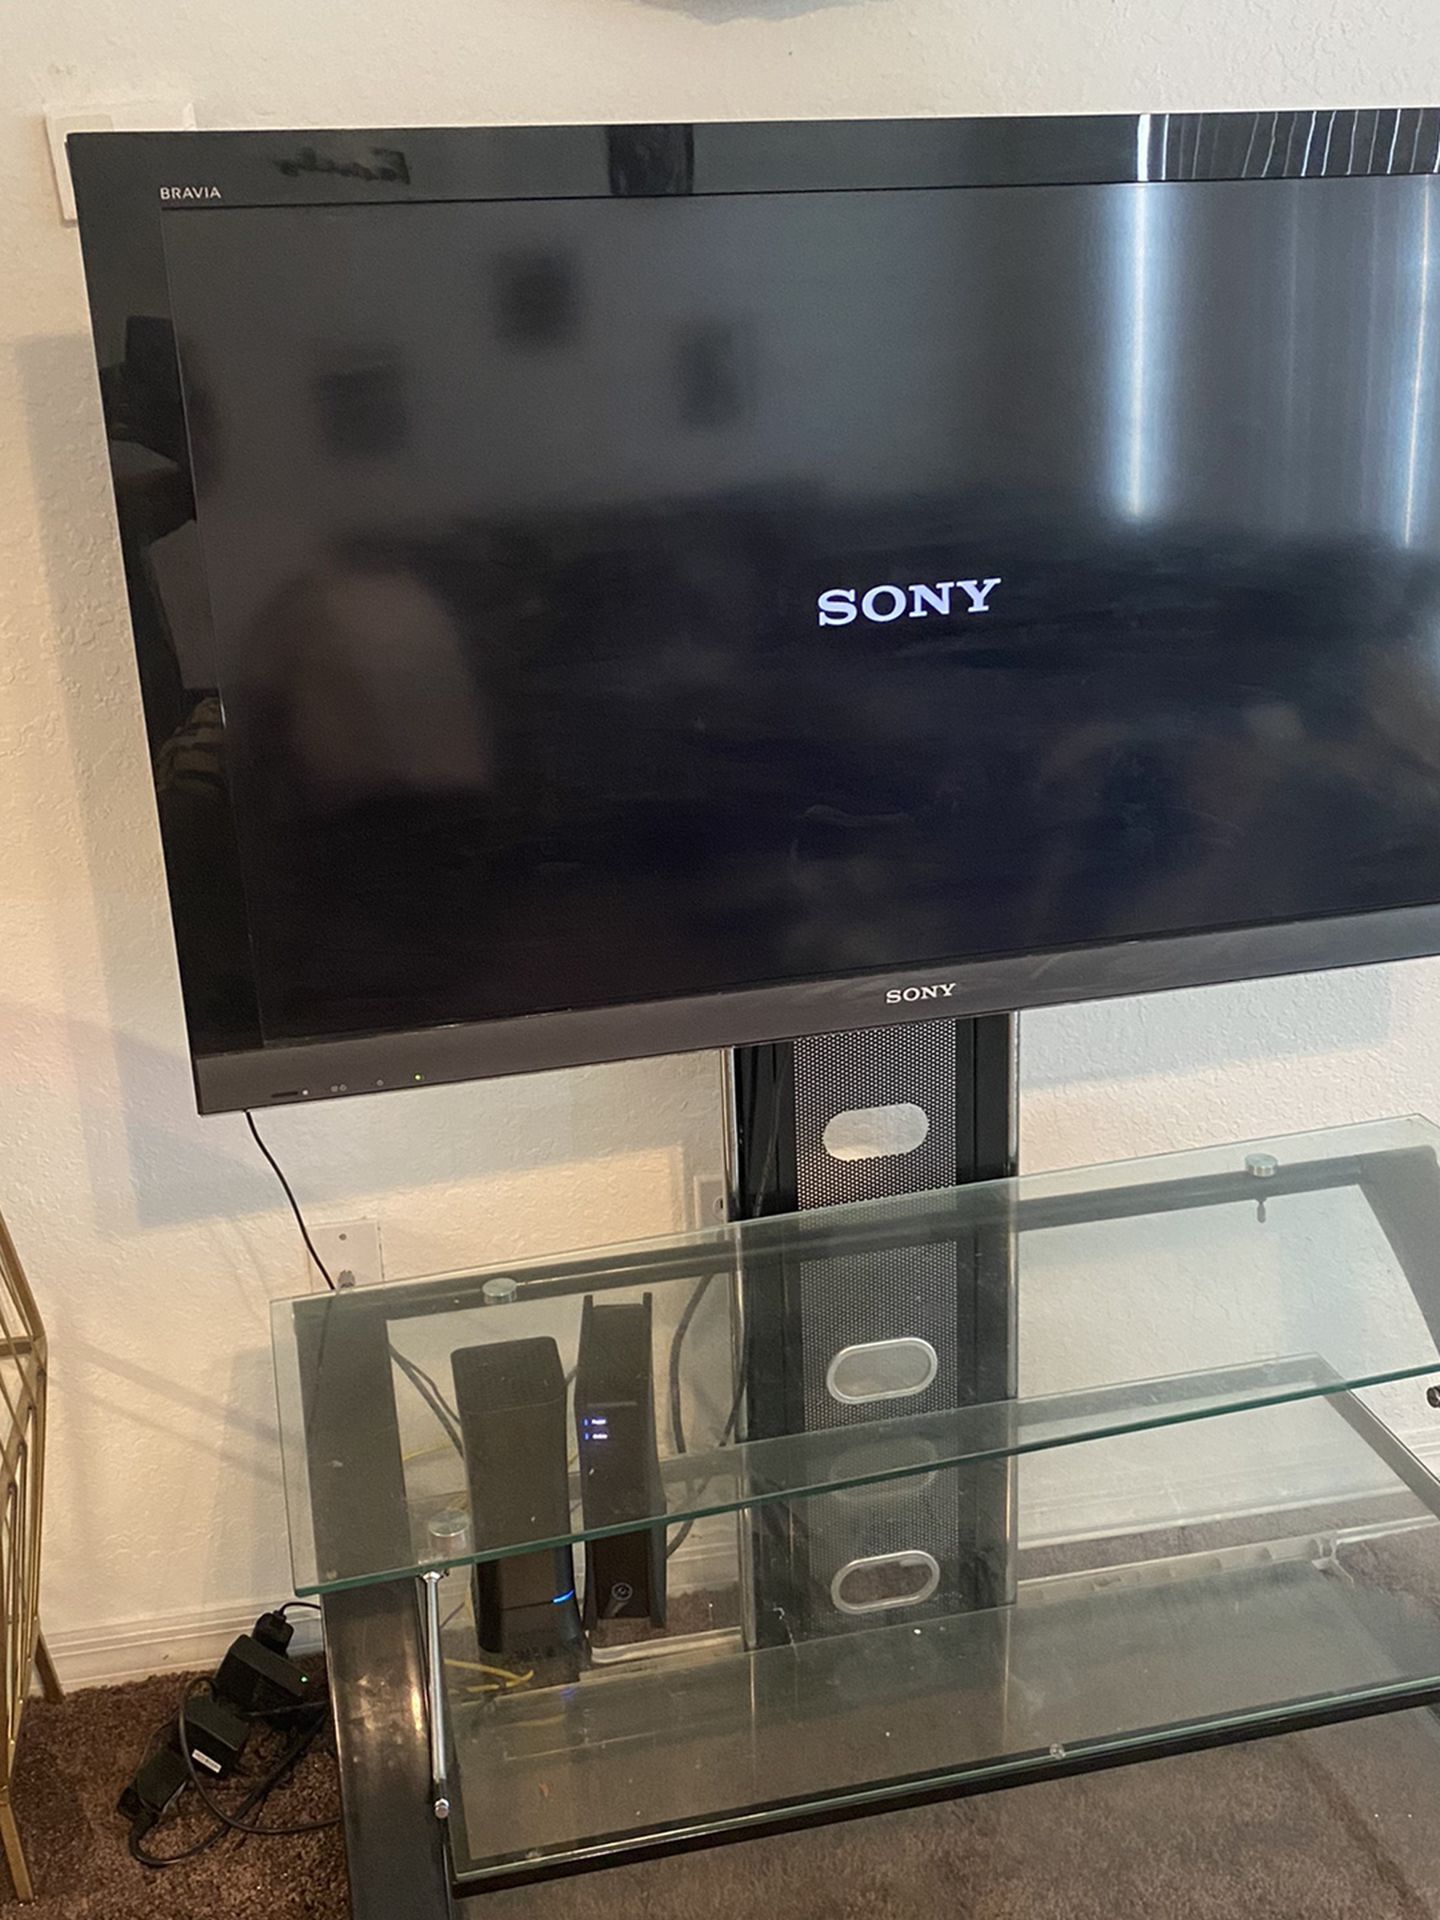 45 Inch Sony Flat Screen Tv